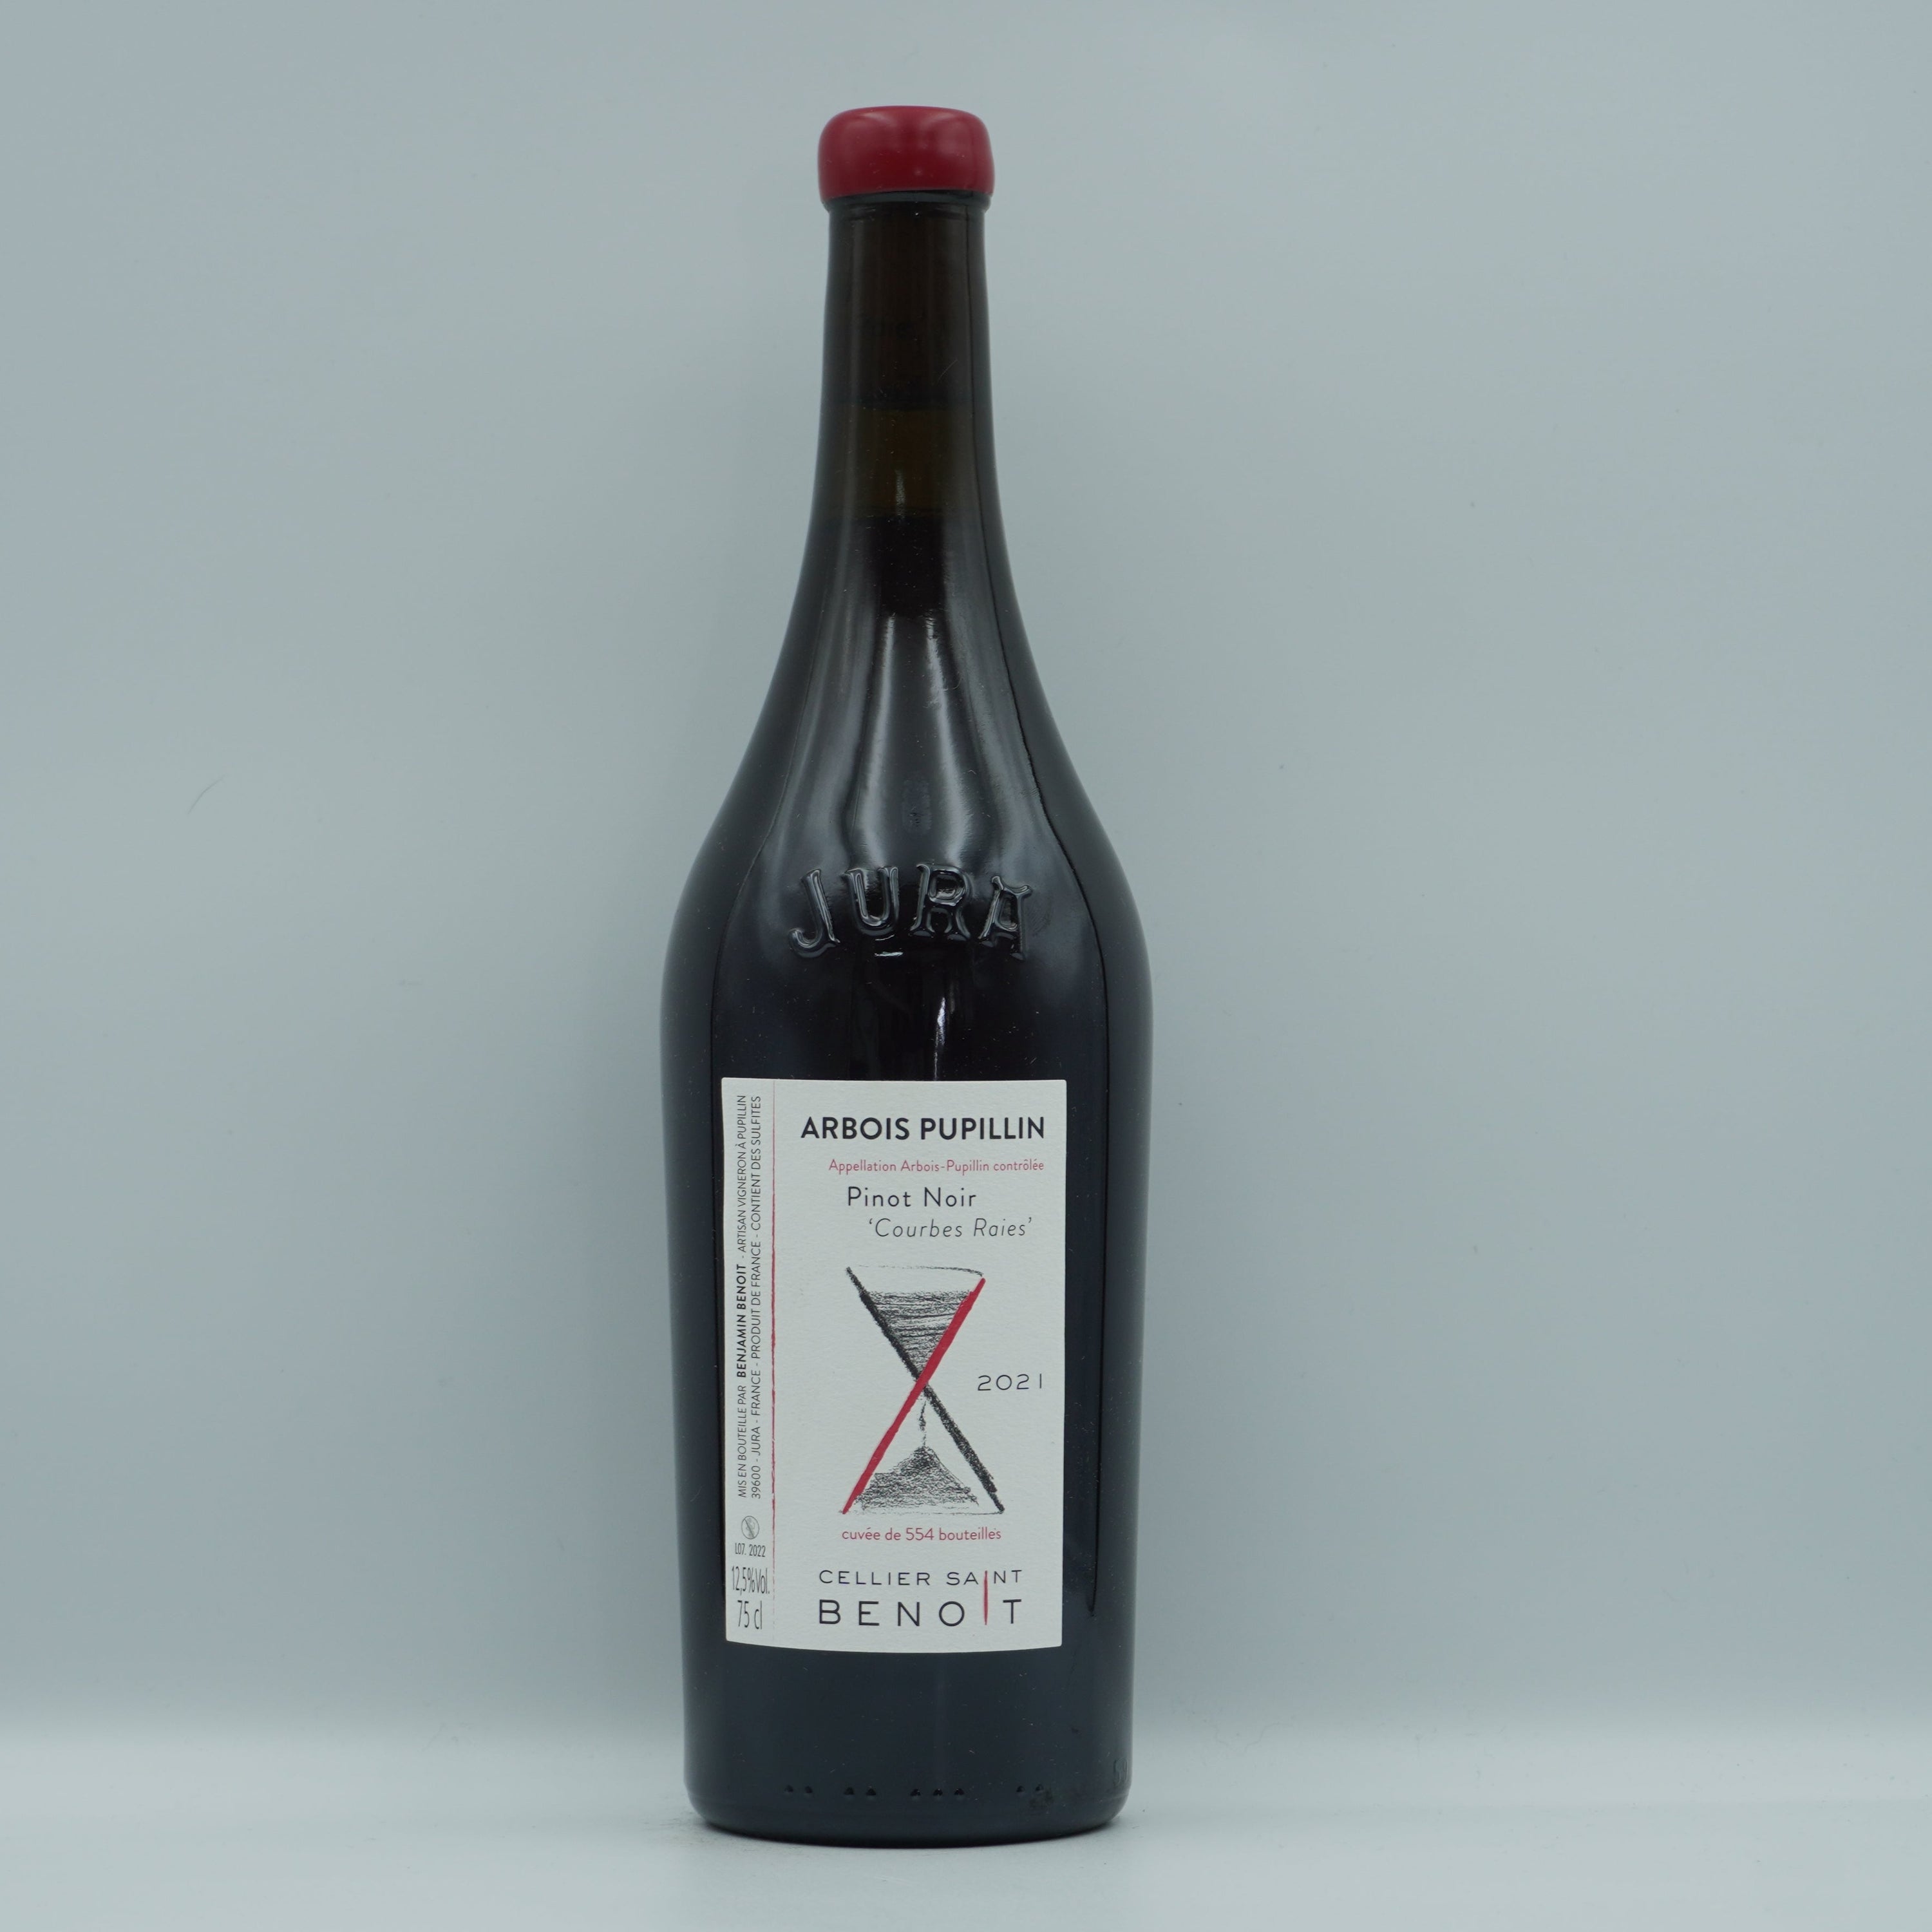 Cellier Saint Benoit, Pinot Noir 'Courbes Raies' 2021